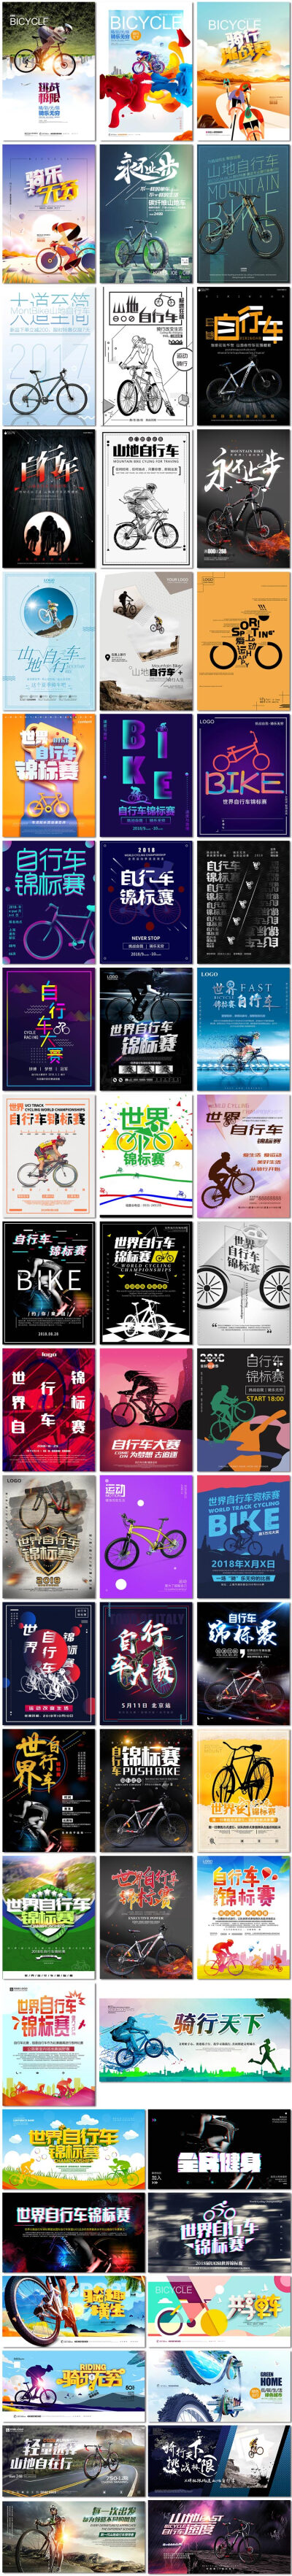 自行车锦标赛体育运动比赛低碳出行骑行展板海报psd模板素材设计